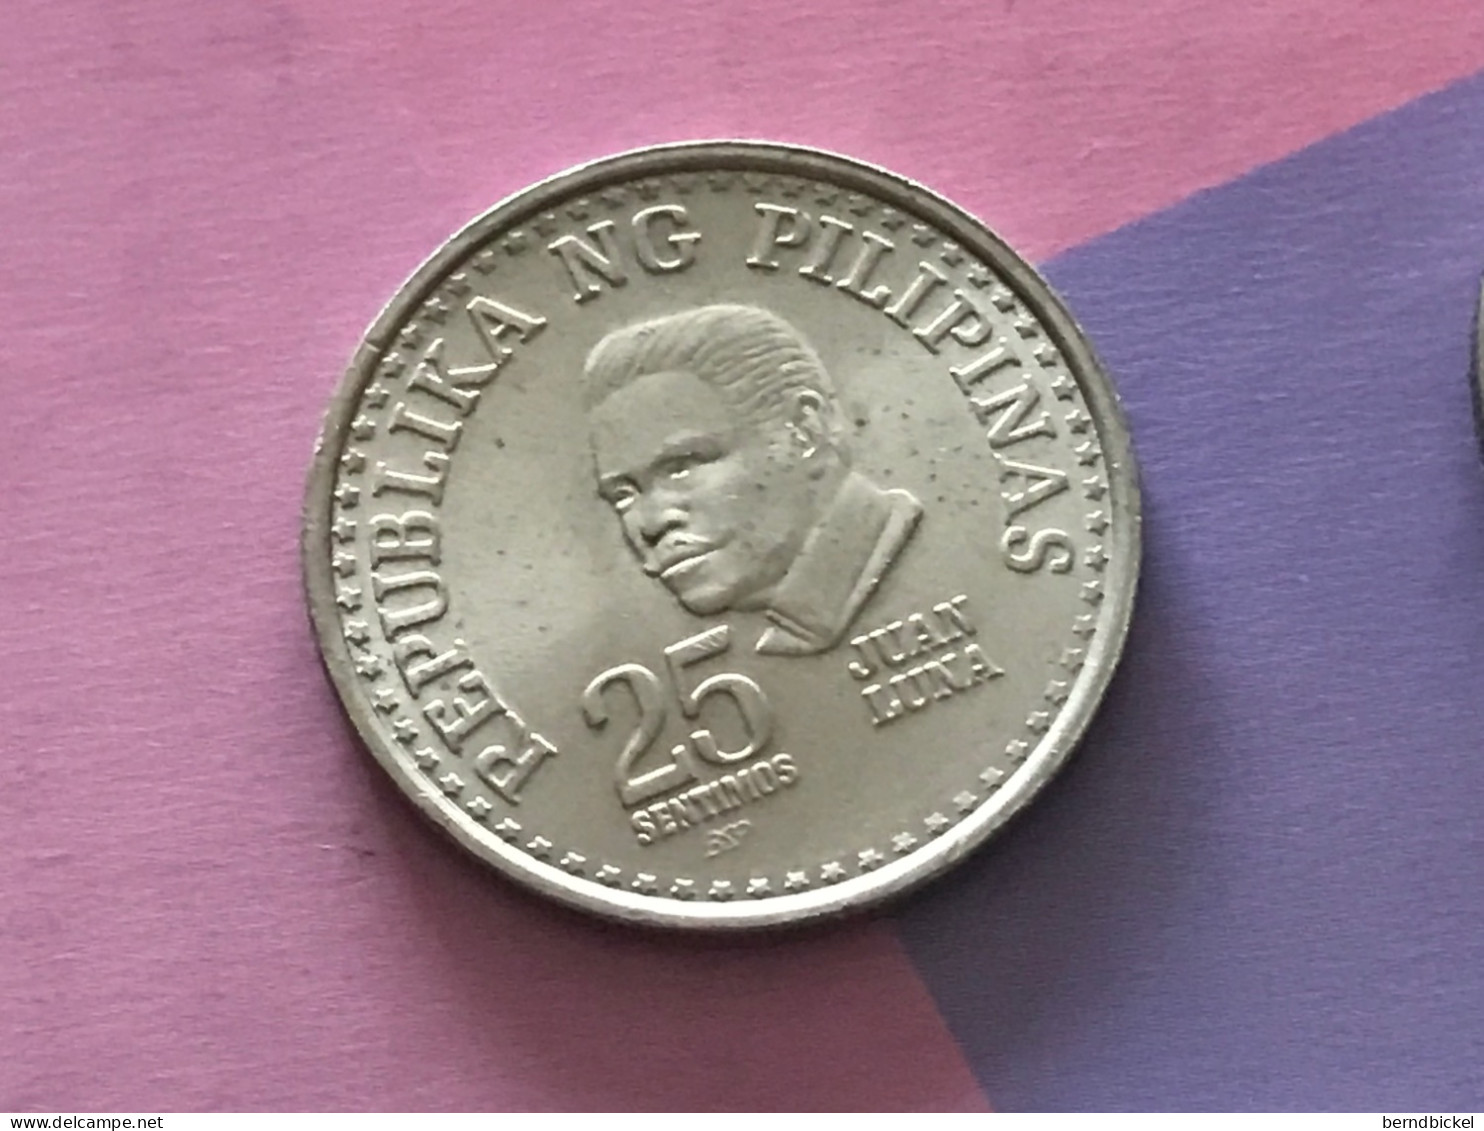 Münze Münzen Umlaufmünze Philippinen 25 Centavos 1979 - Filippine